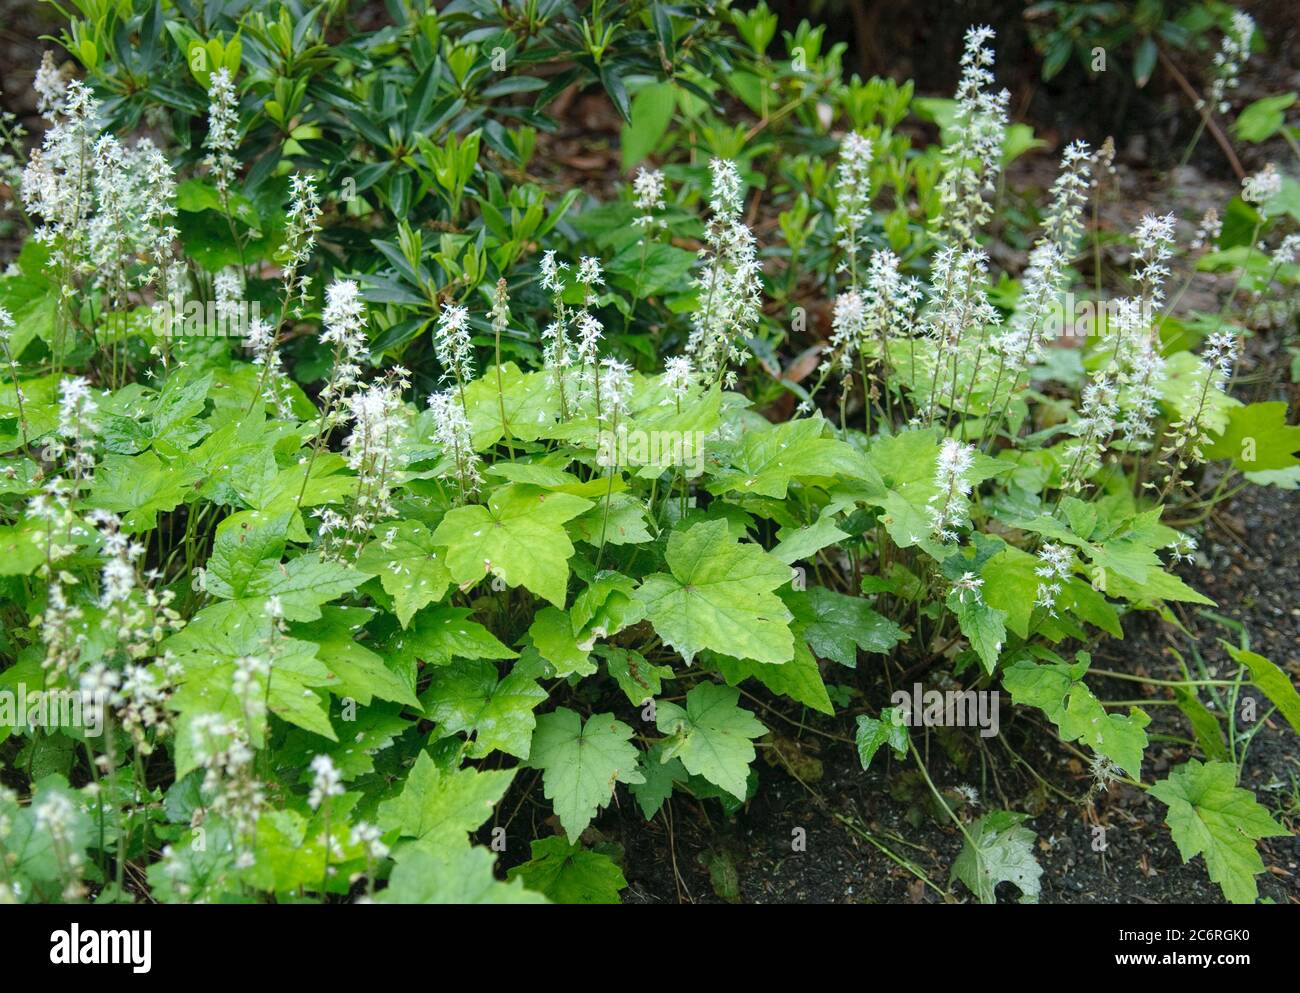 Wald-Schaumkraut Tiarella cordifolia Moorgruen, Cardamine flexuosa Tiarella cordifolia Moor Green Stock Photo